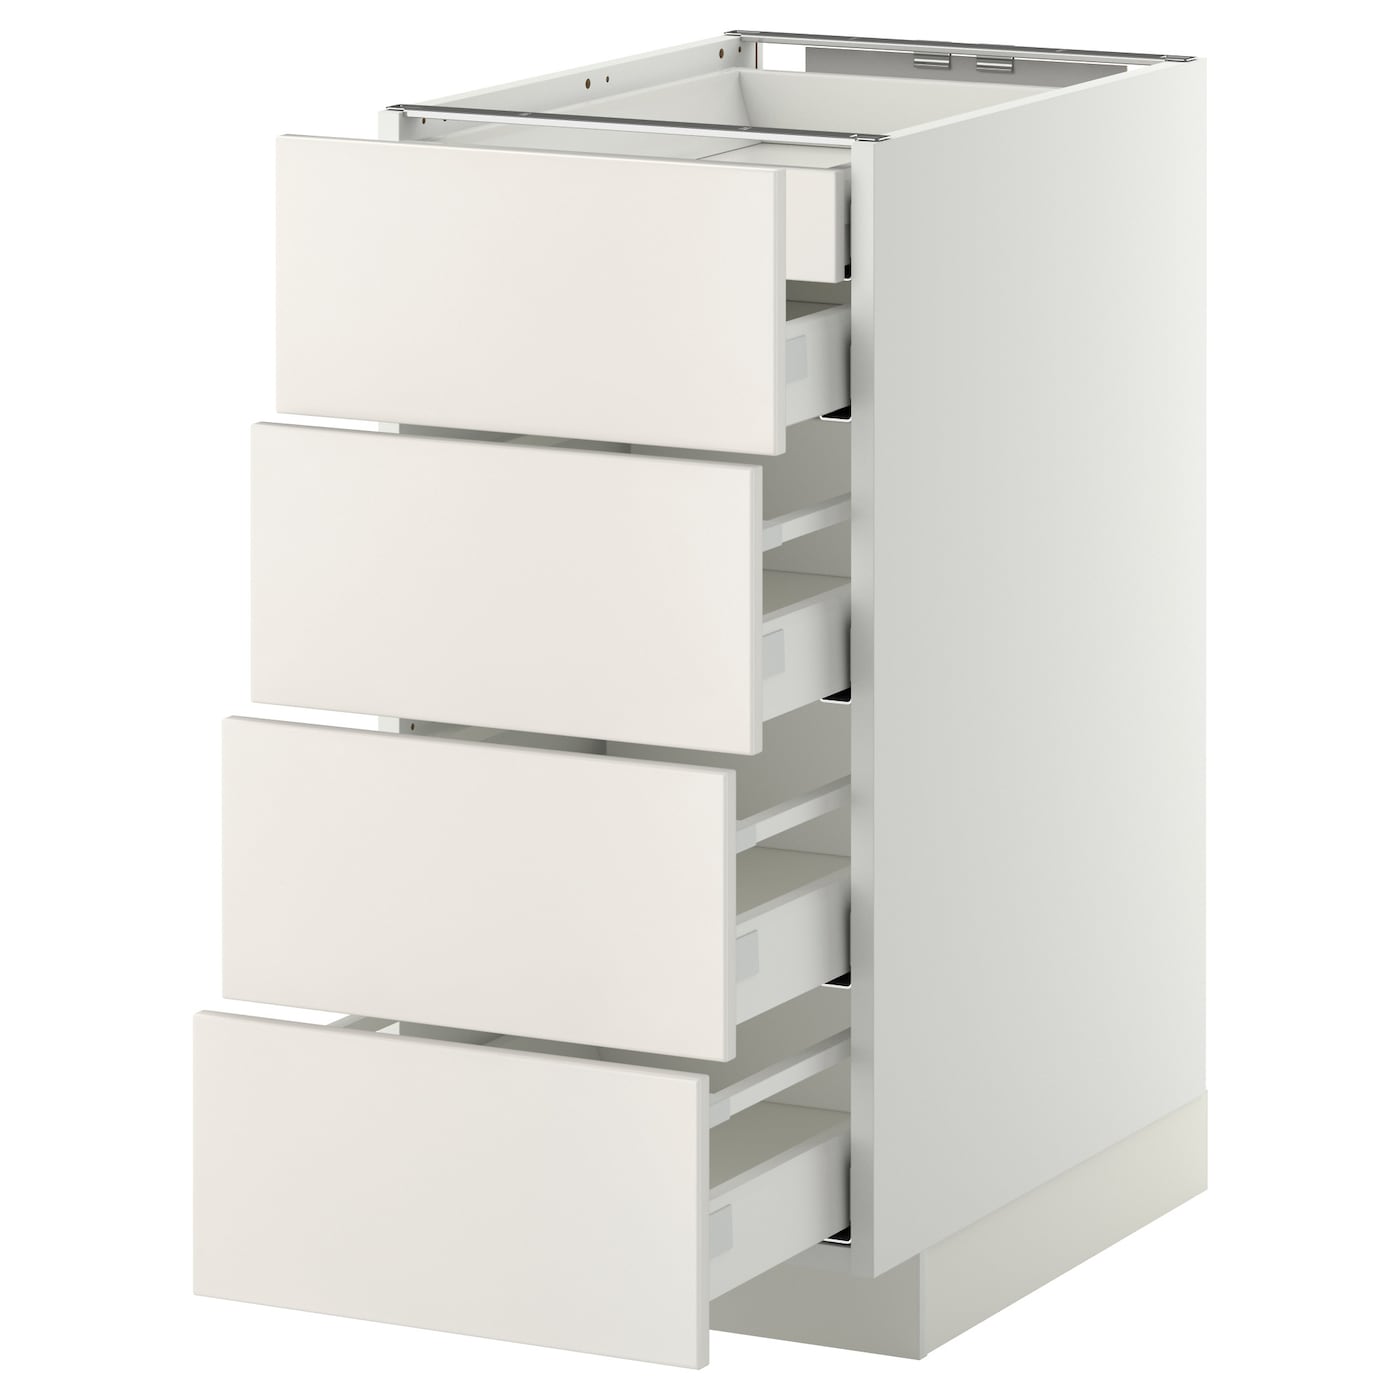 Напольный кухонный шкаф  - IKEA METOD MAXIMERA, 80x62x40см, белый, МЕТОД МАКСИМЕРА ИКЕА